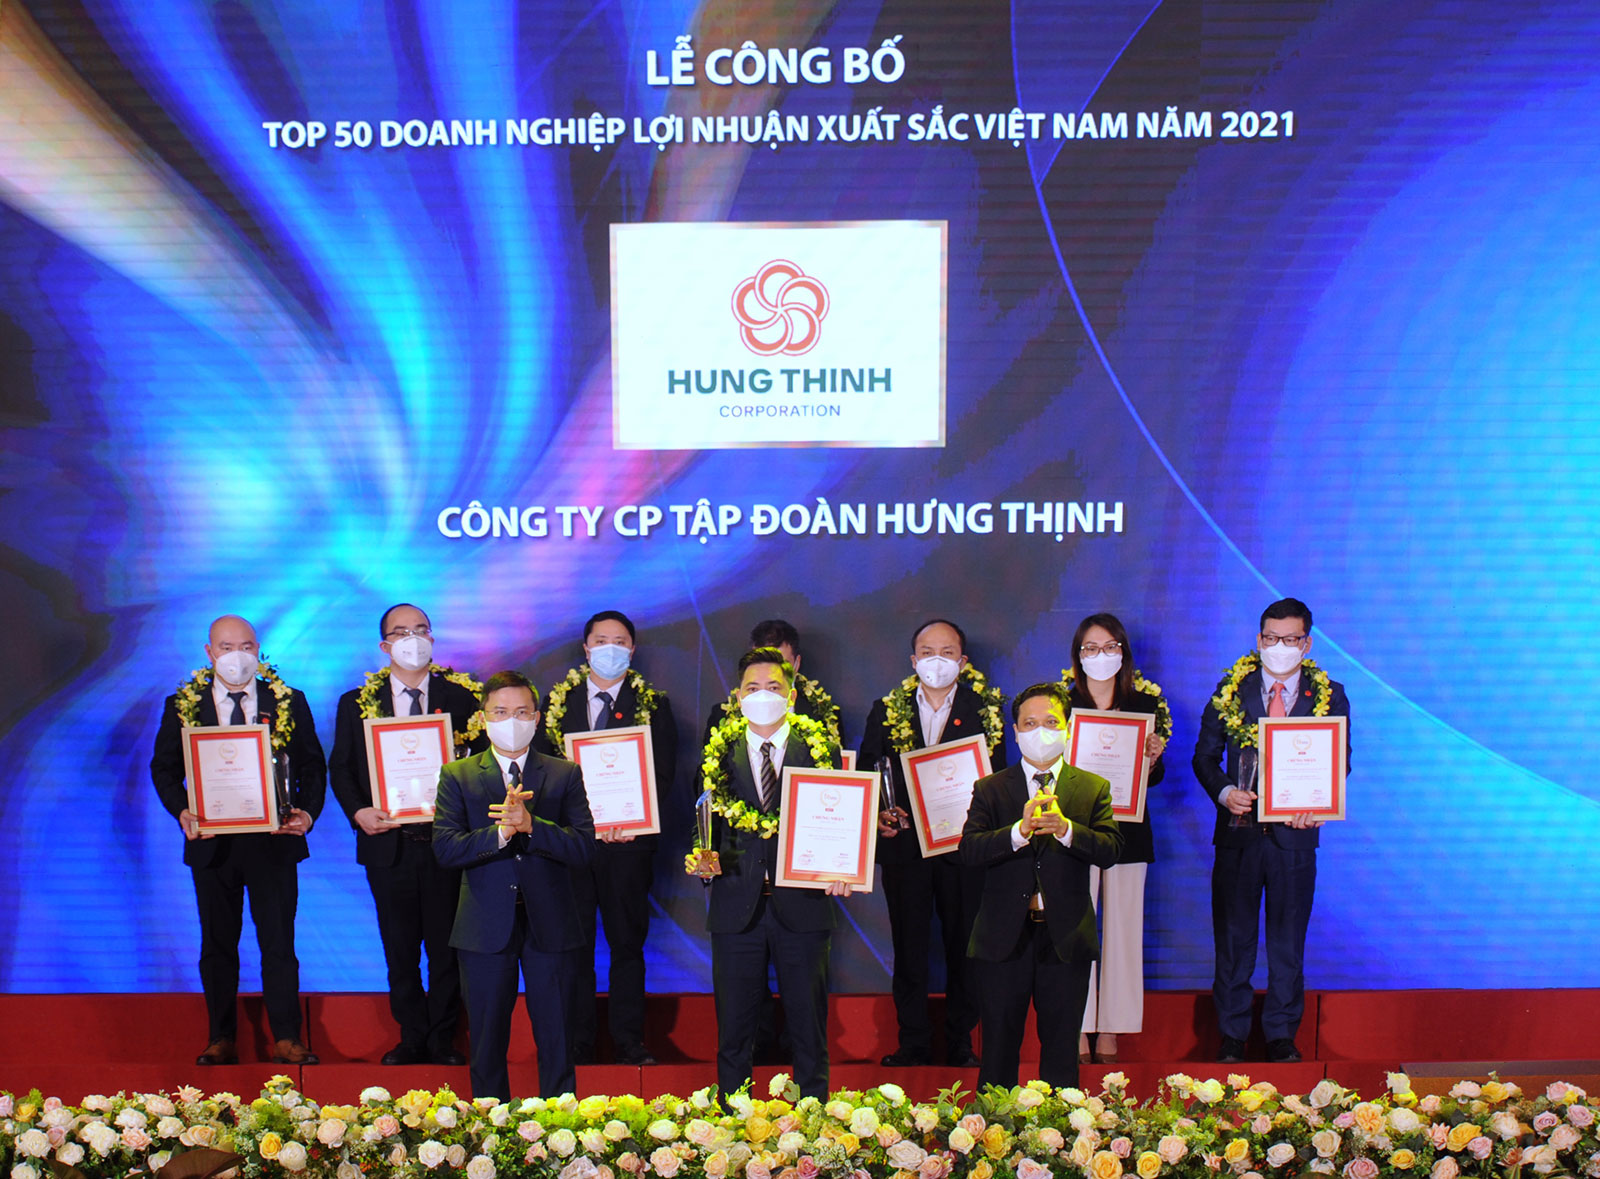 Top 50 doanh nghiệp lợi nhuận xuất sắc Việt Nam 2021